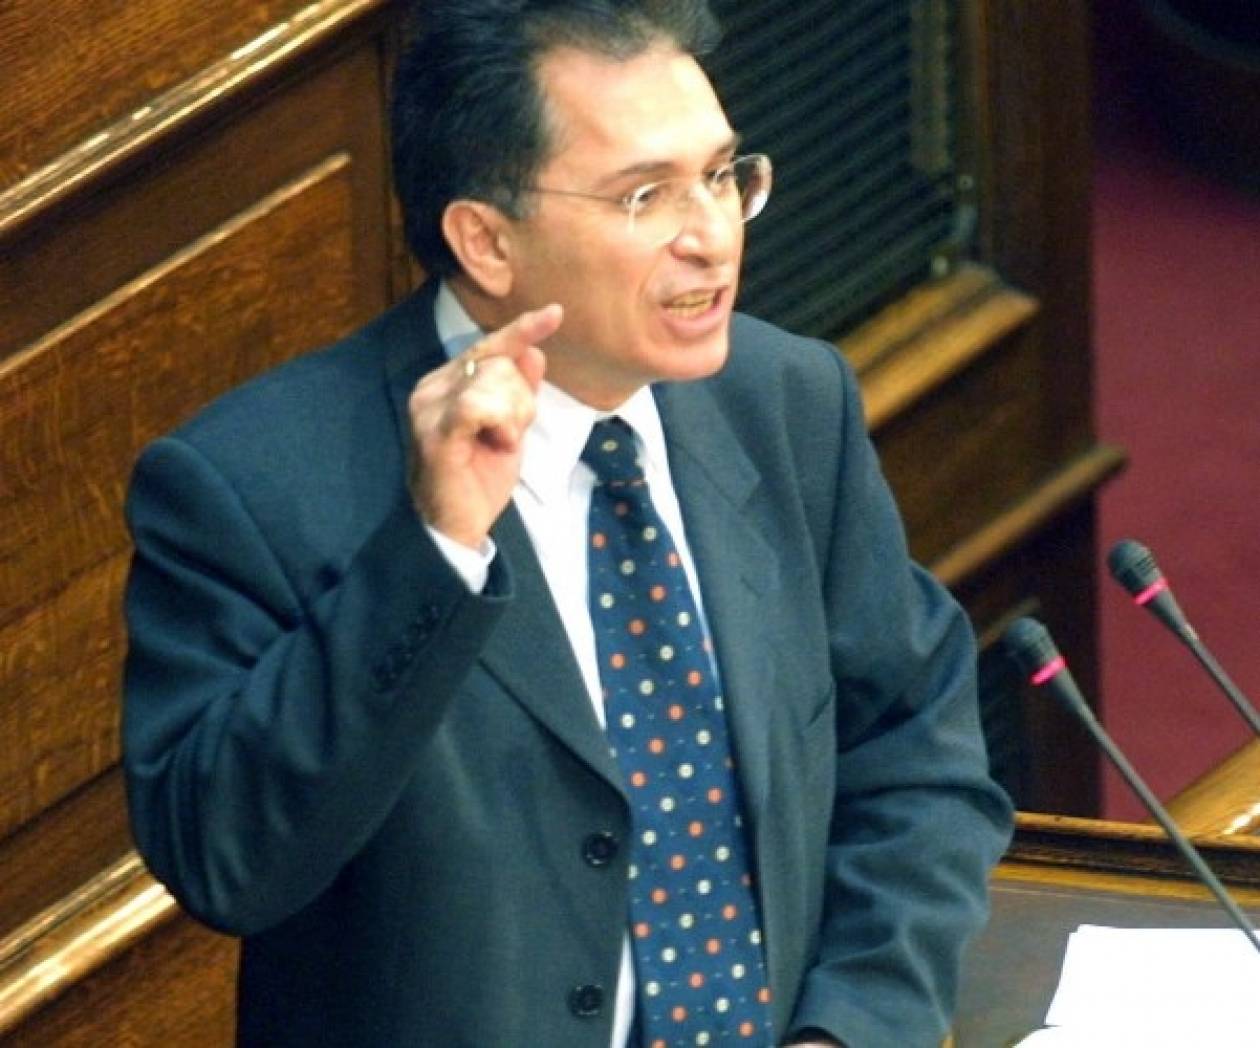 Παραπέμπεται ο πρώην υφυπουργός, Γ. Ανθόπουλος, για ανακριβές πόθεν έσχες